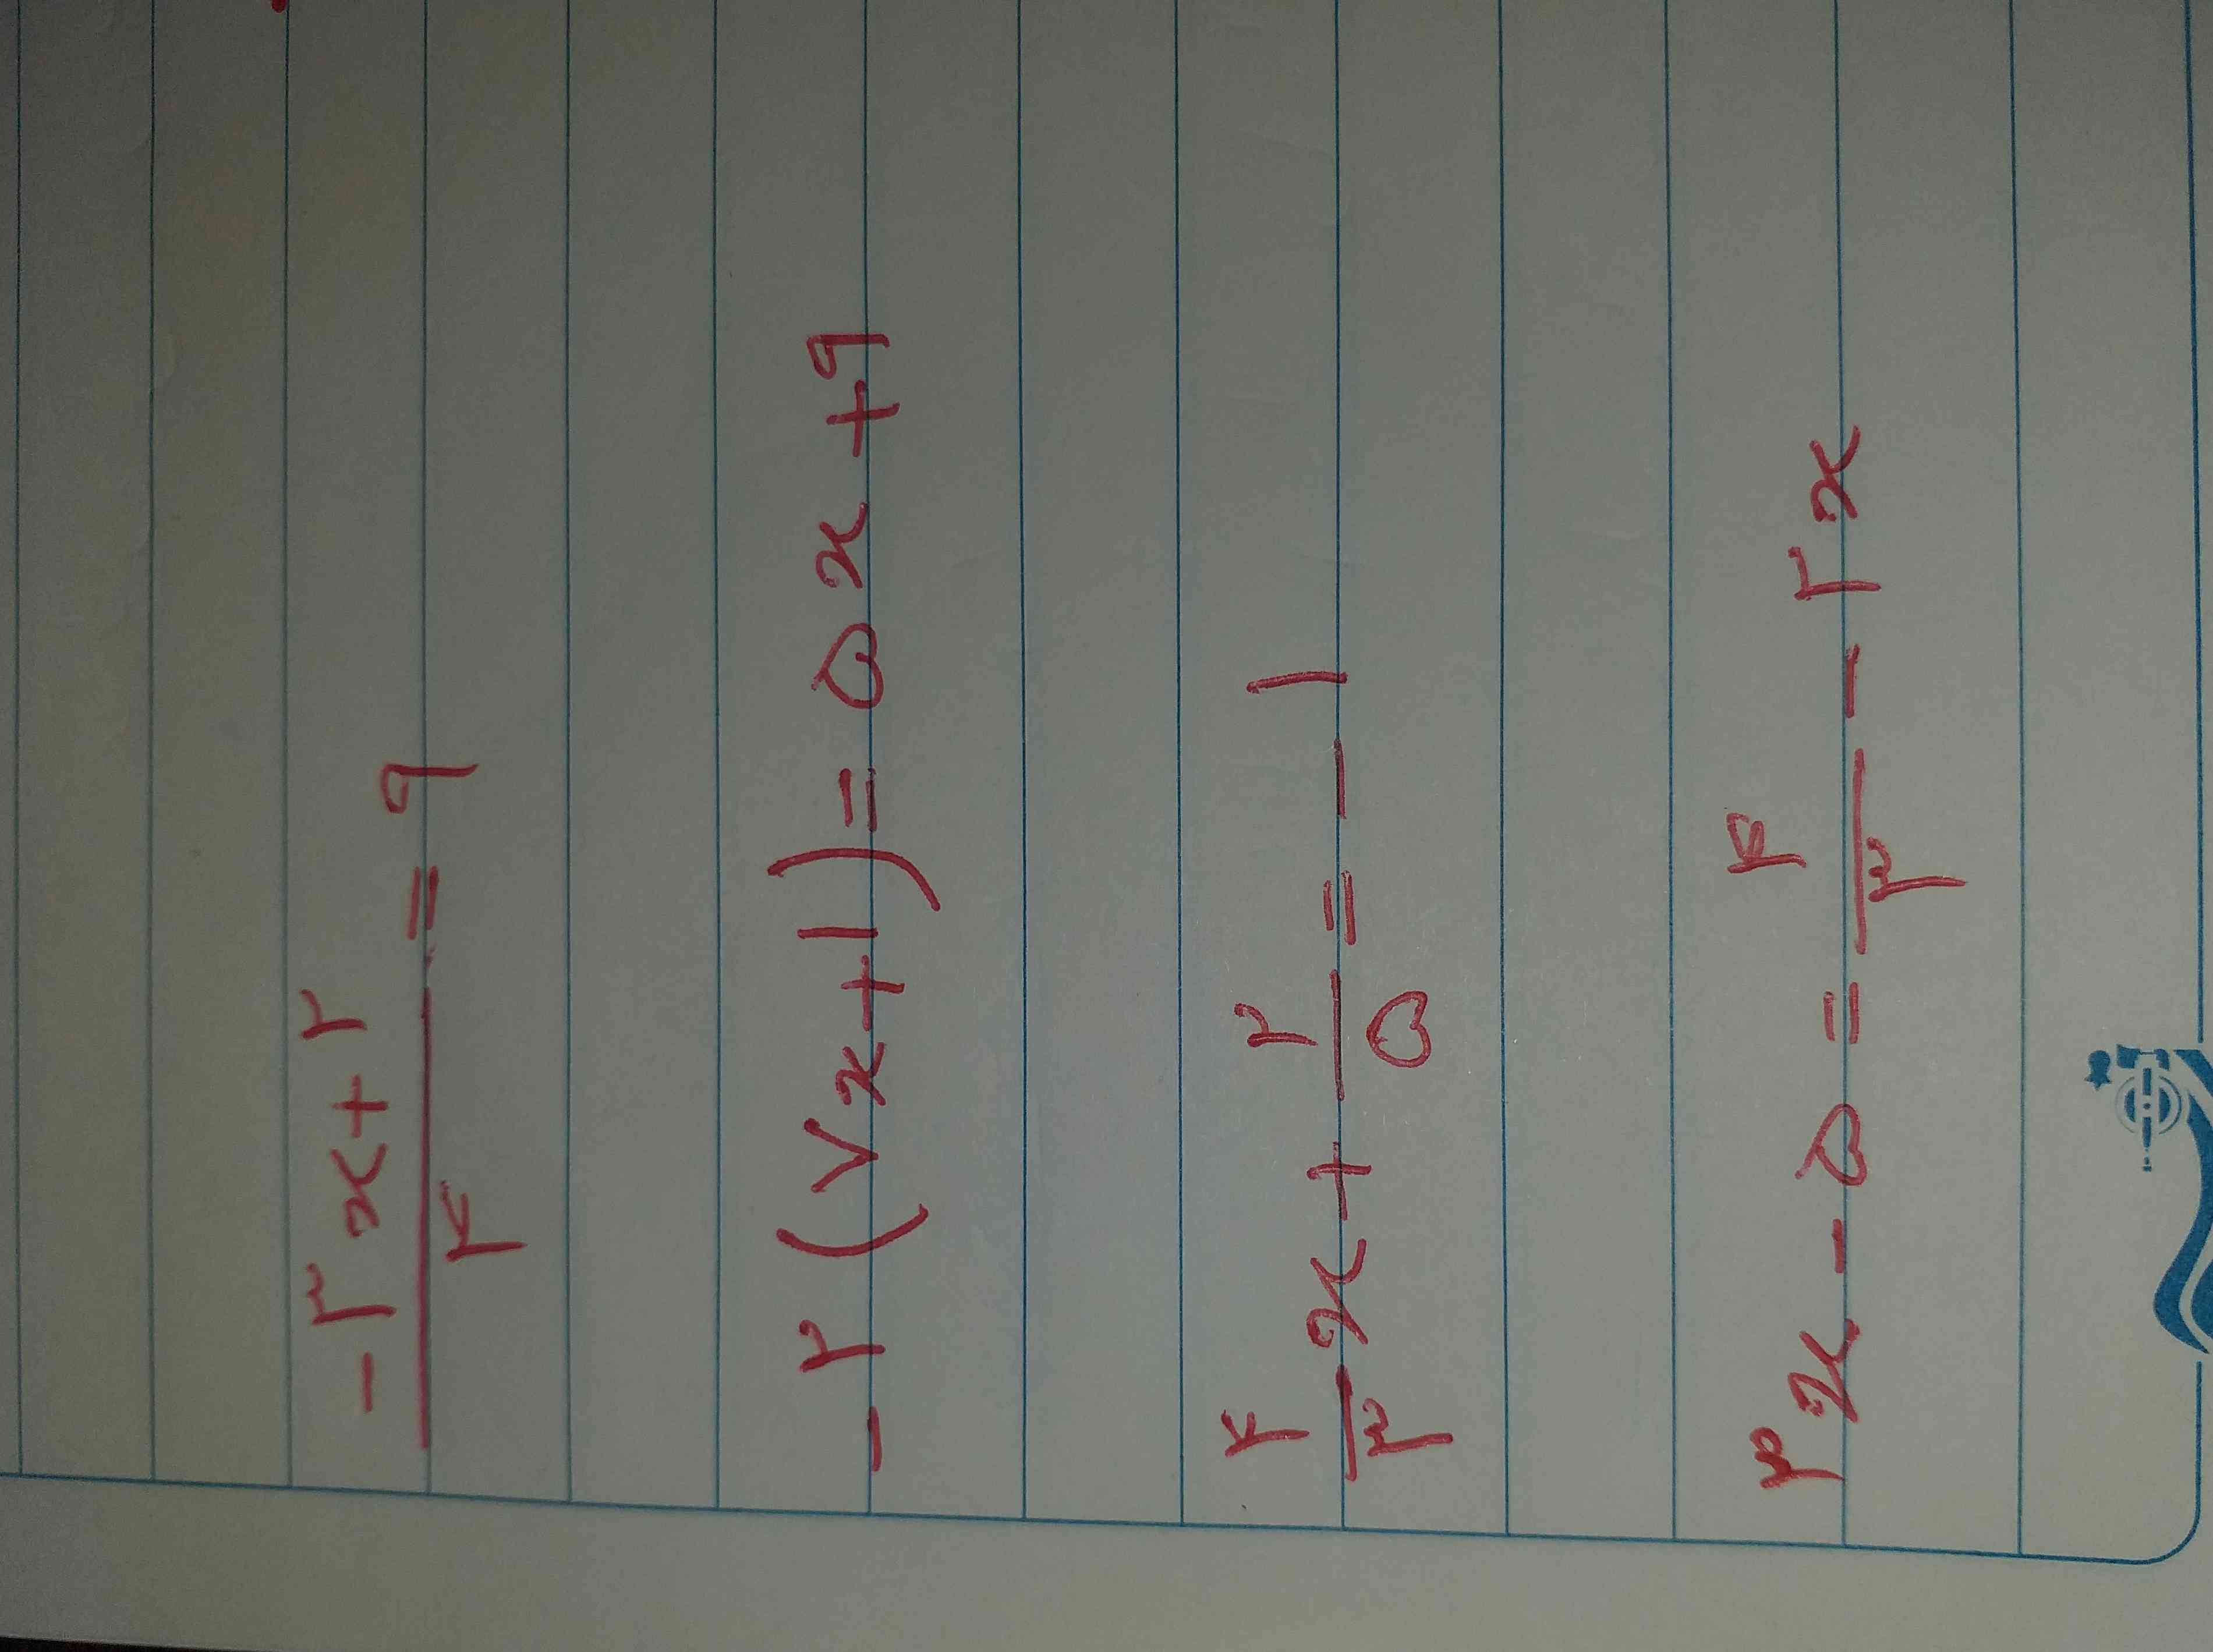 لطفا جواب این معادله هارو برام بنویسید 
ممنون❤